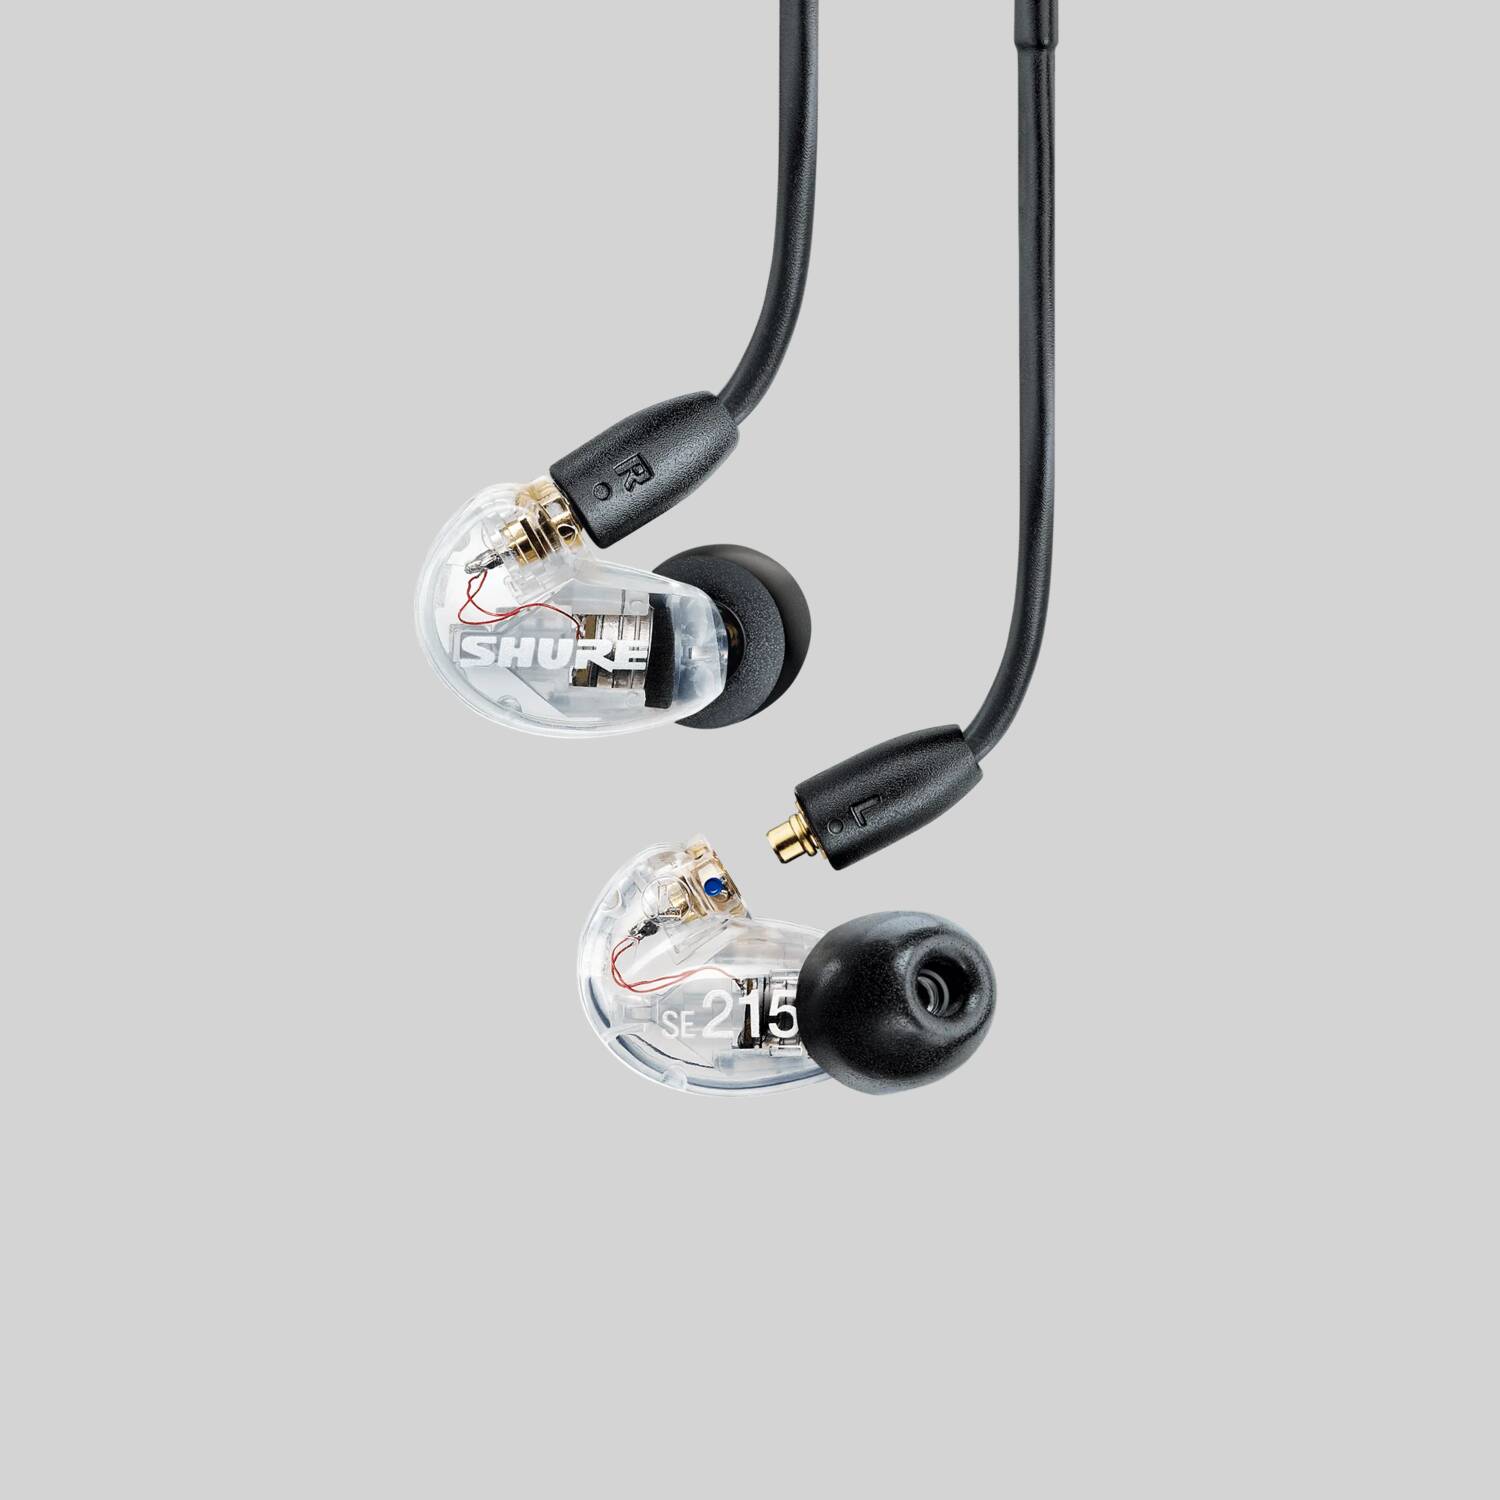 AONIC 215 - Sound Isolating™ Earphones - Shure USA